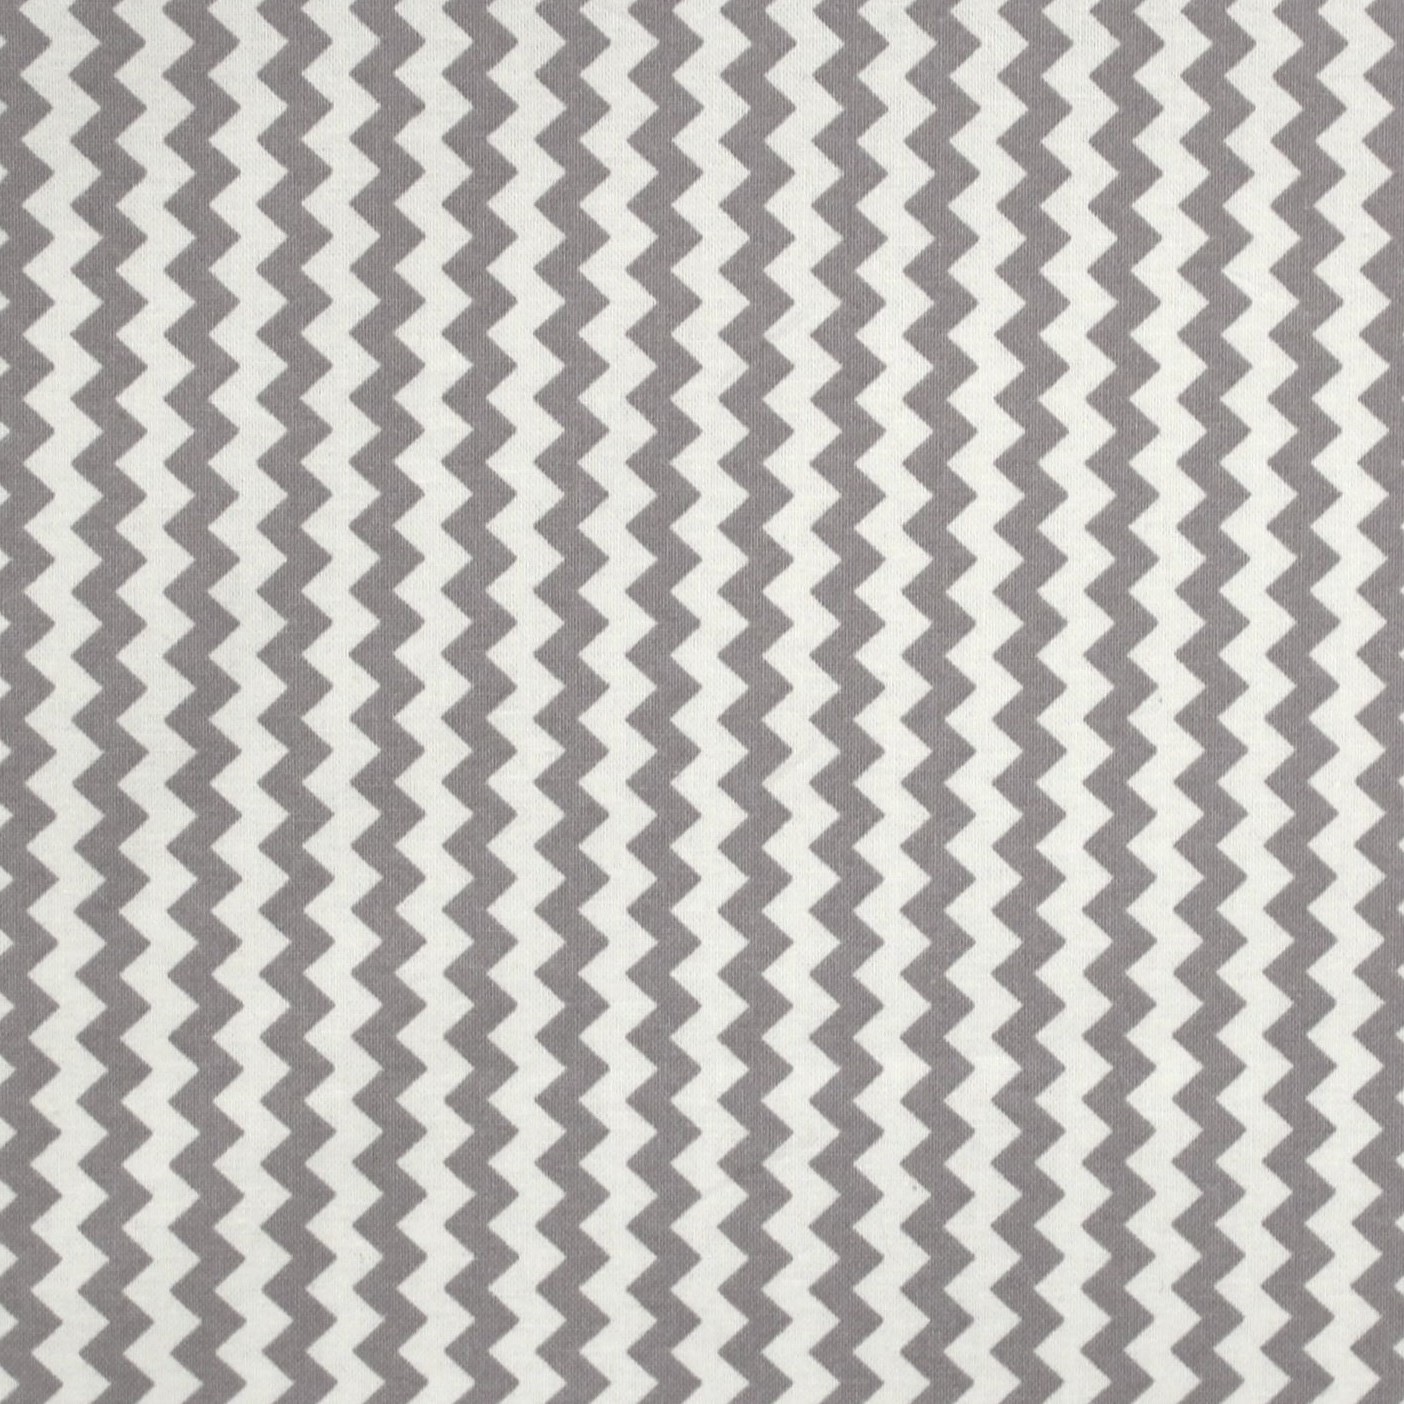 Chevron White & Dark Grey Stripes Cotton Fabric